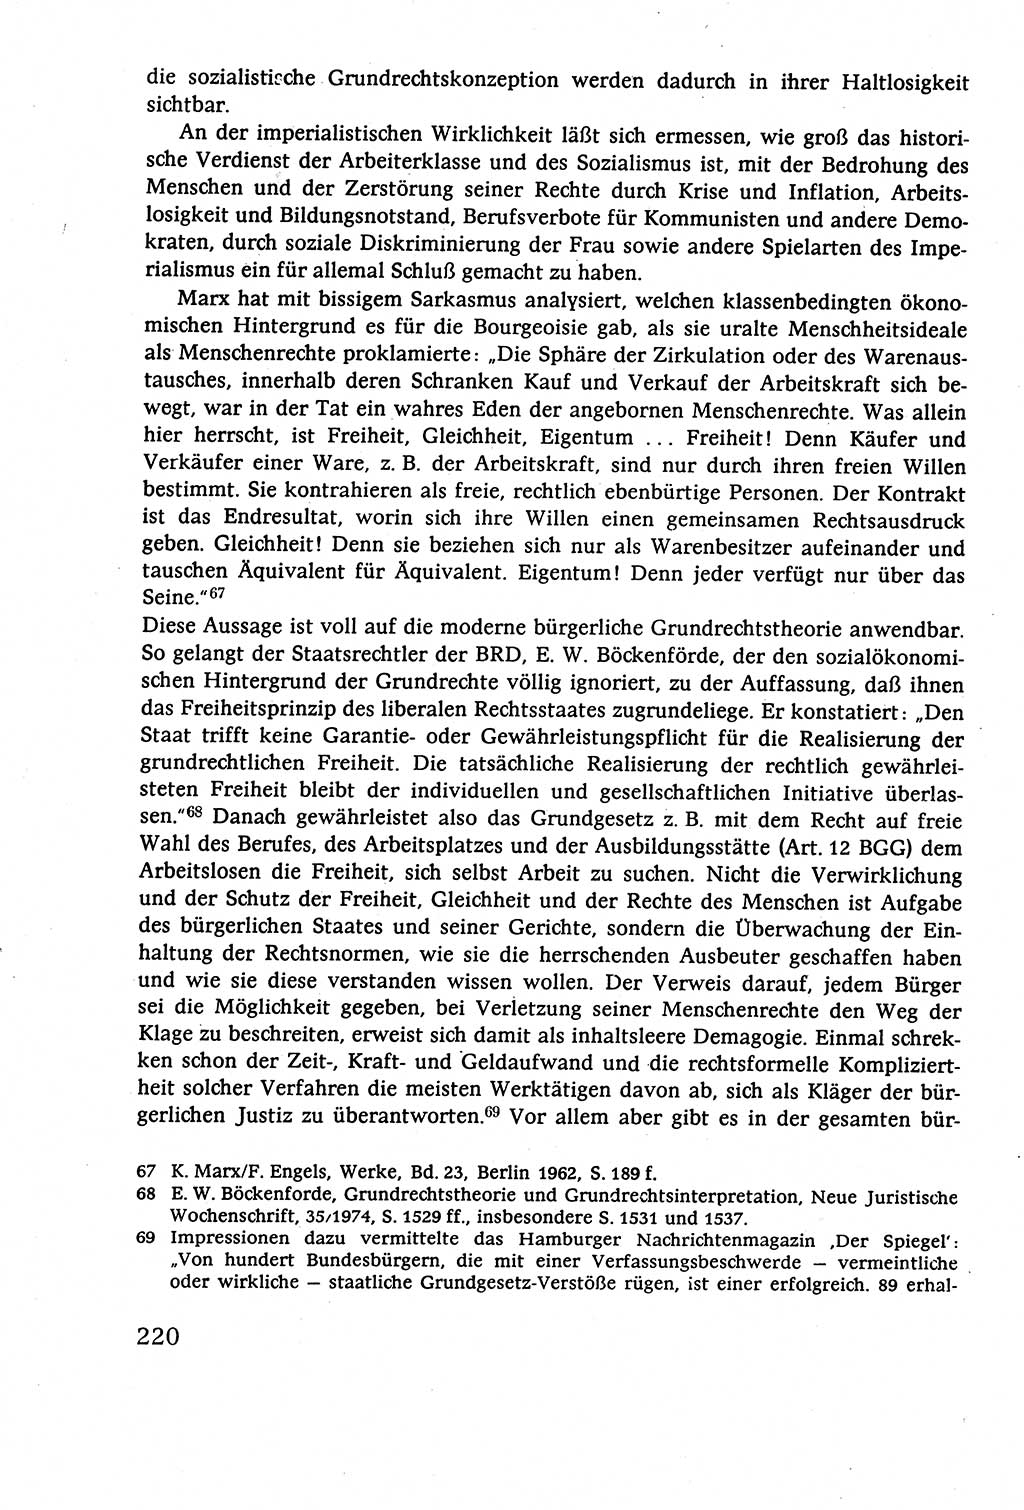 Staatsrecht der DDR (Deutsche Demokratische Republik), Lehrbuch 1977, Seite 220 (St.-R. DDR Lb. 1977, S. 220)